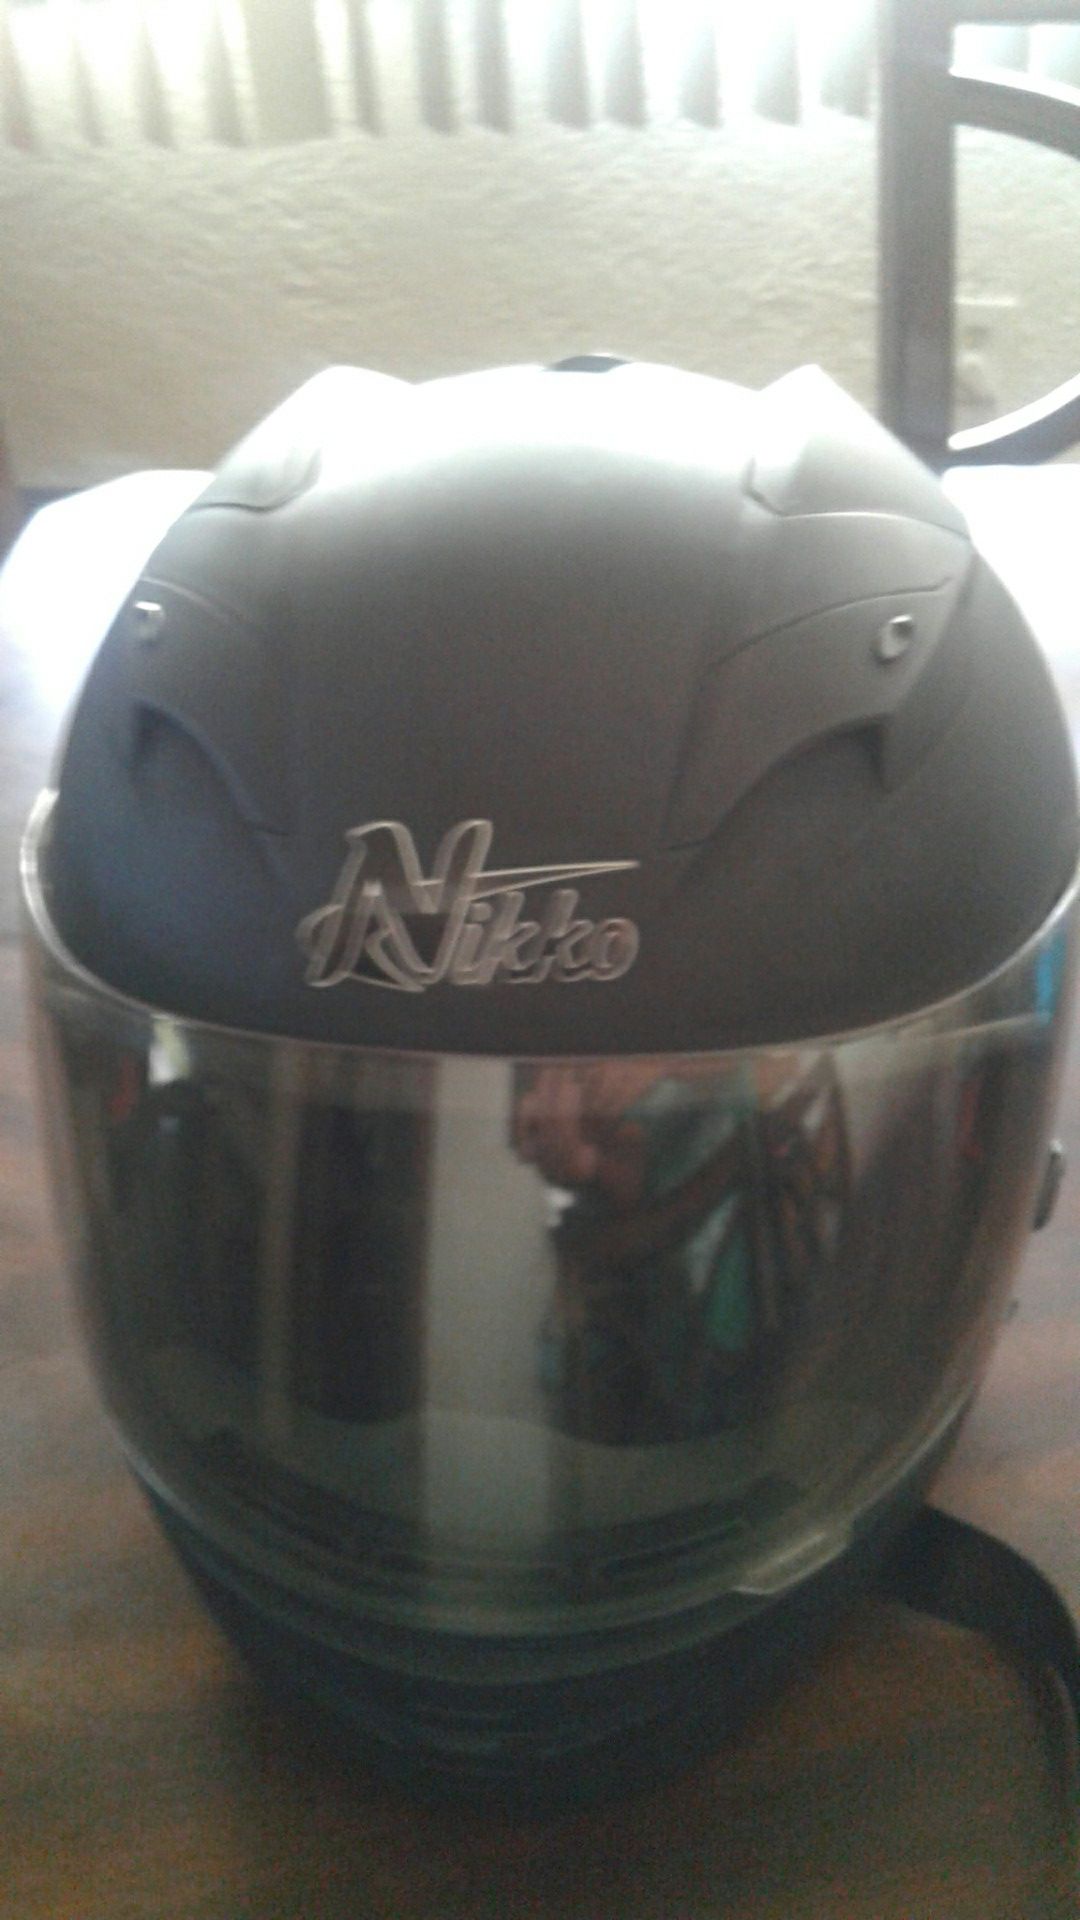 Nikko motorcycle helmet